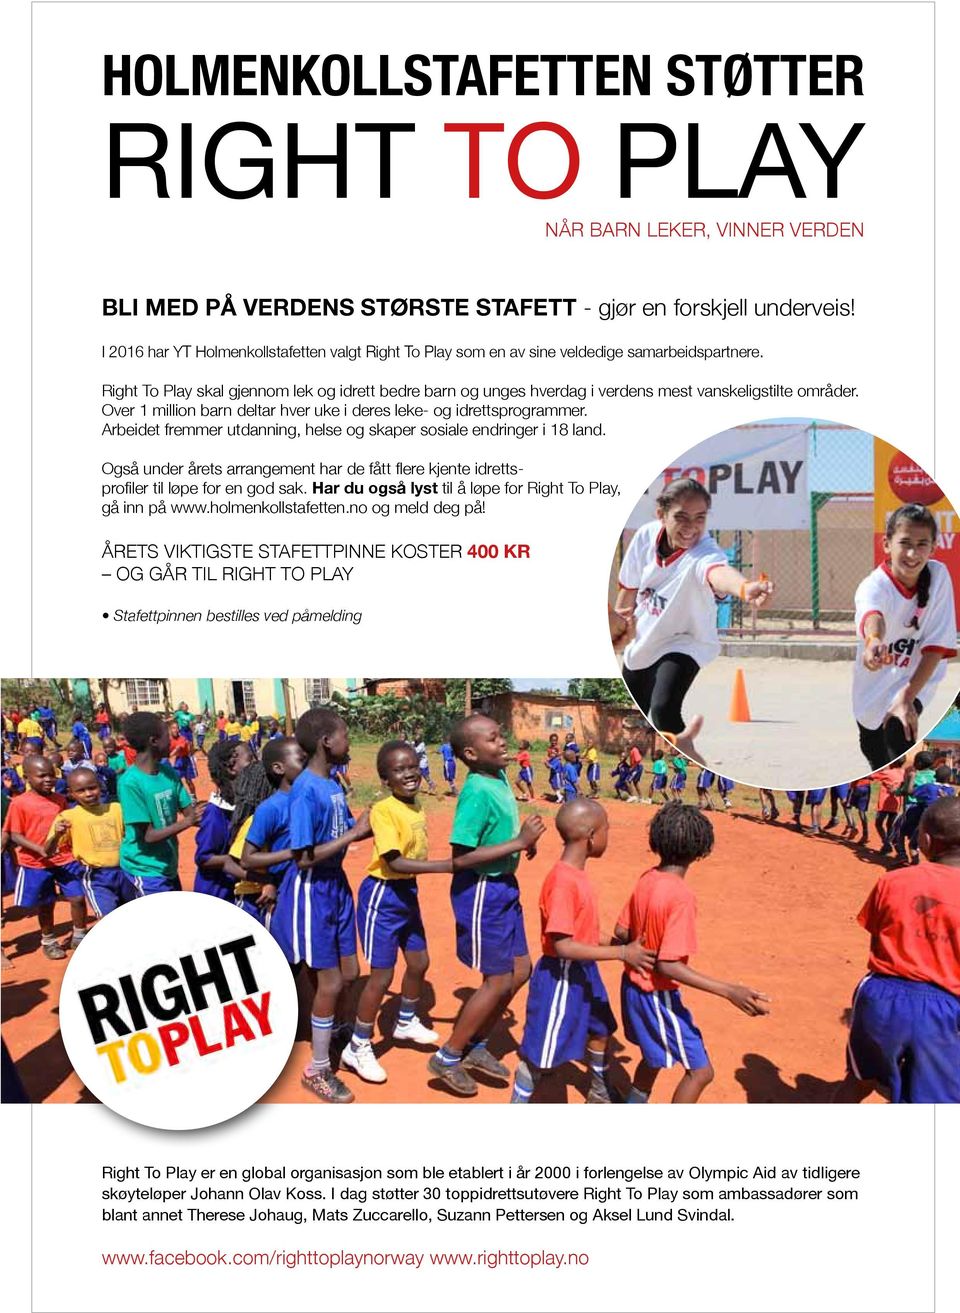 Right To Play skal gjennom lek og idrett bedre barn og unges hverdag i verdens mest vanskeligstilte områder. Over 1 million barn deltar hver uke i deres leke- og idrettsprogrammer.